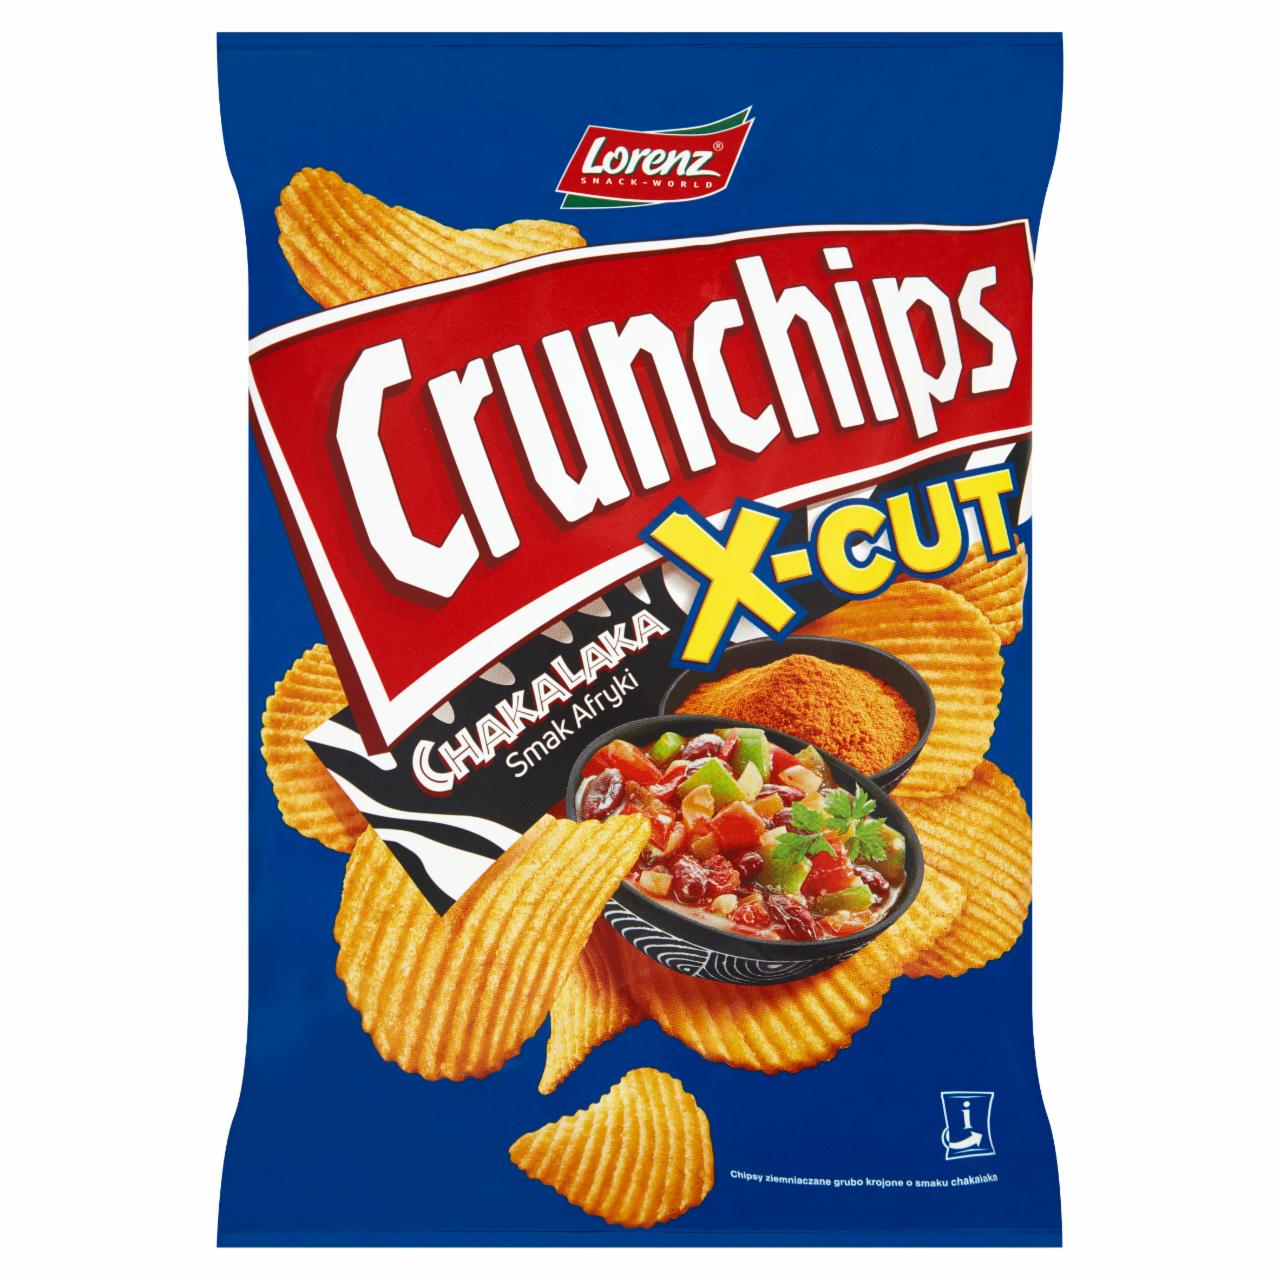 Zdjęcia - Crunchips X-Cut Chipsy ziemniaczane o smaku chakalaka 140 g